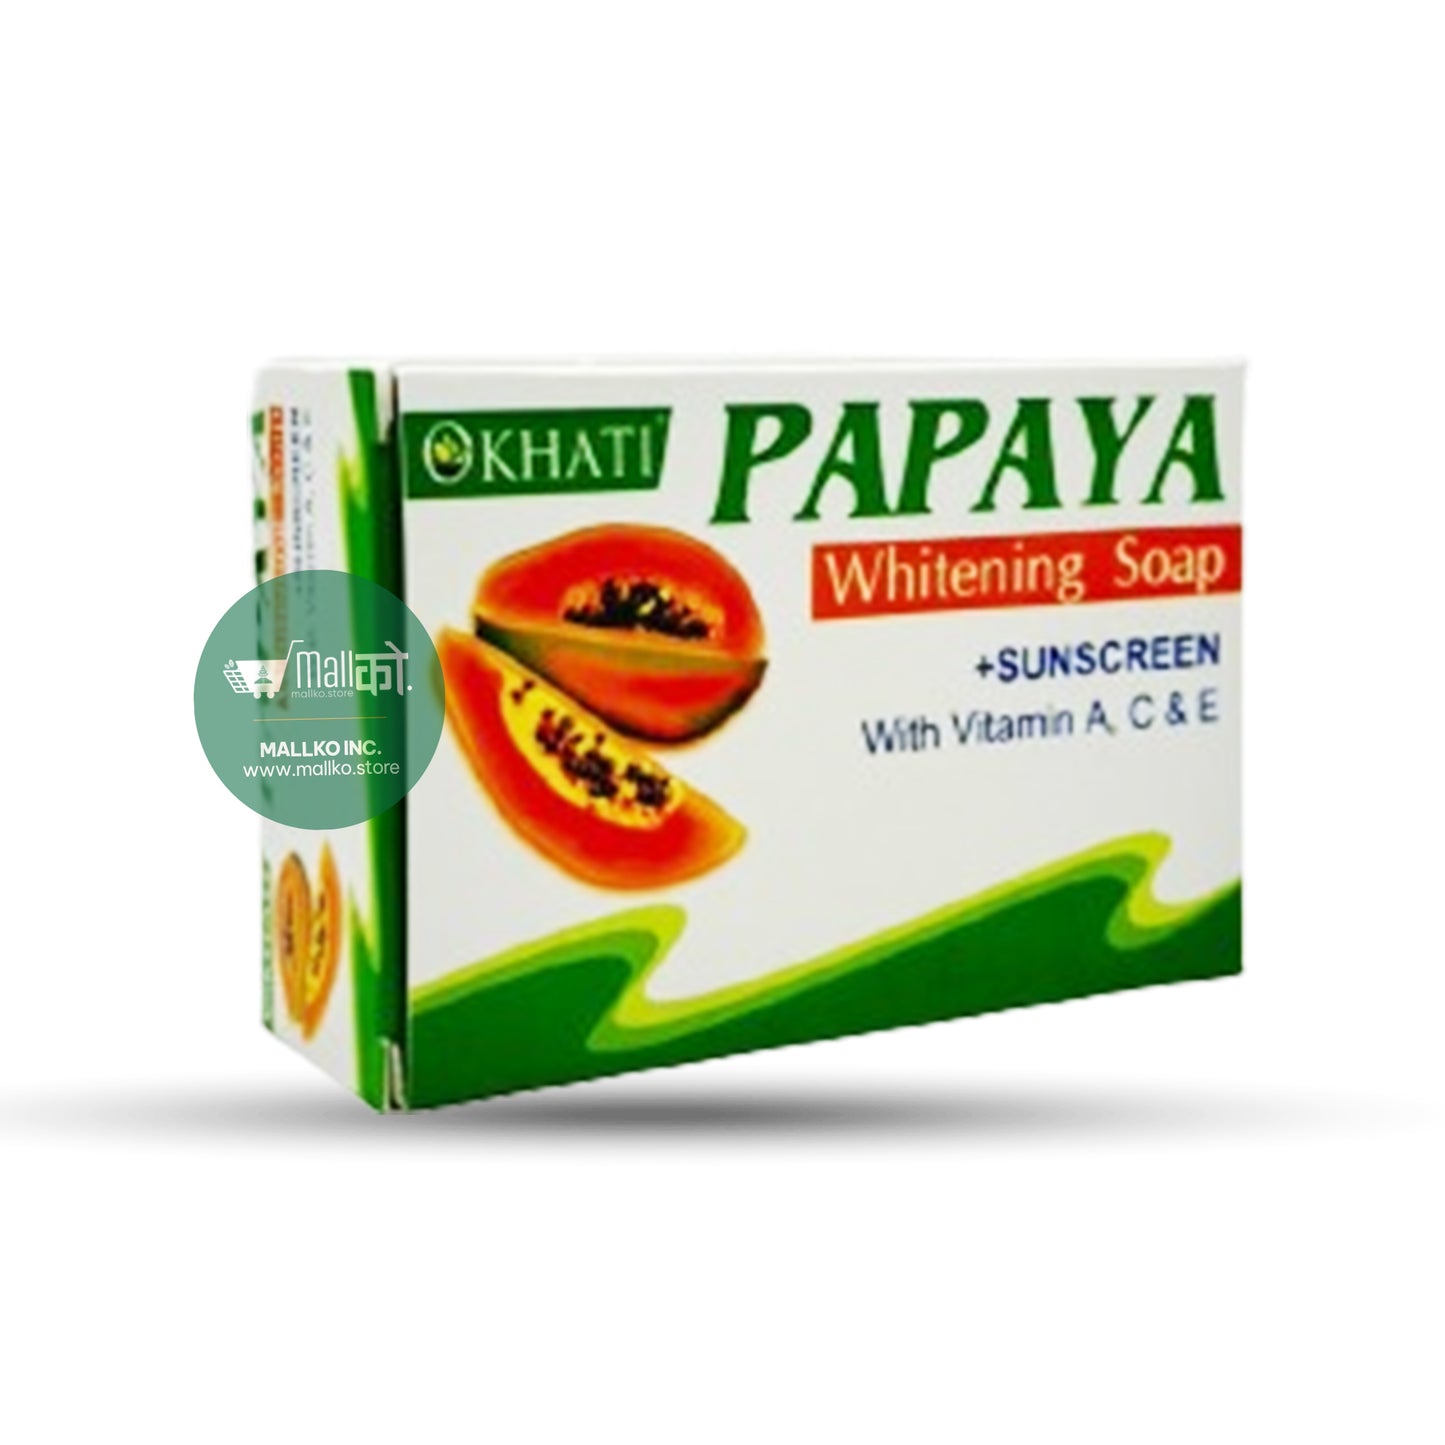 Okhati Papaya Soap